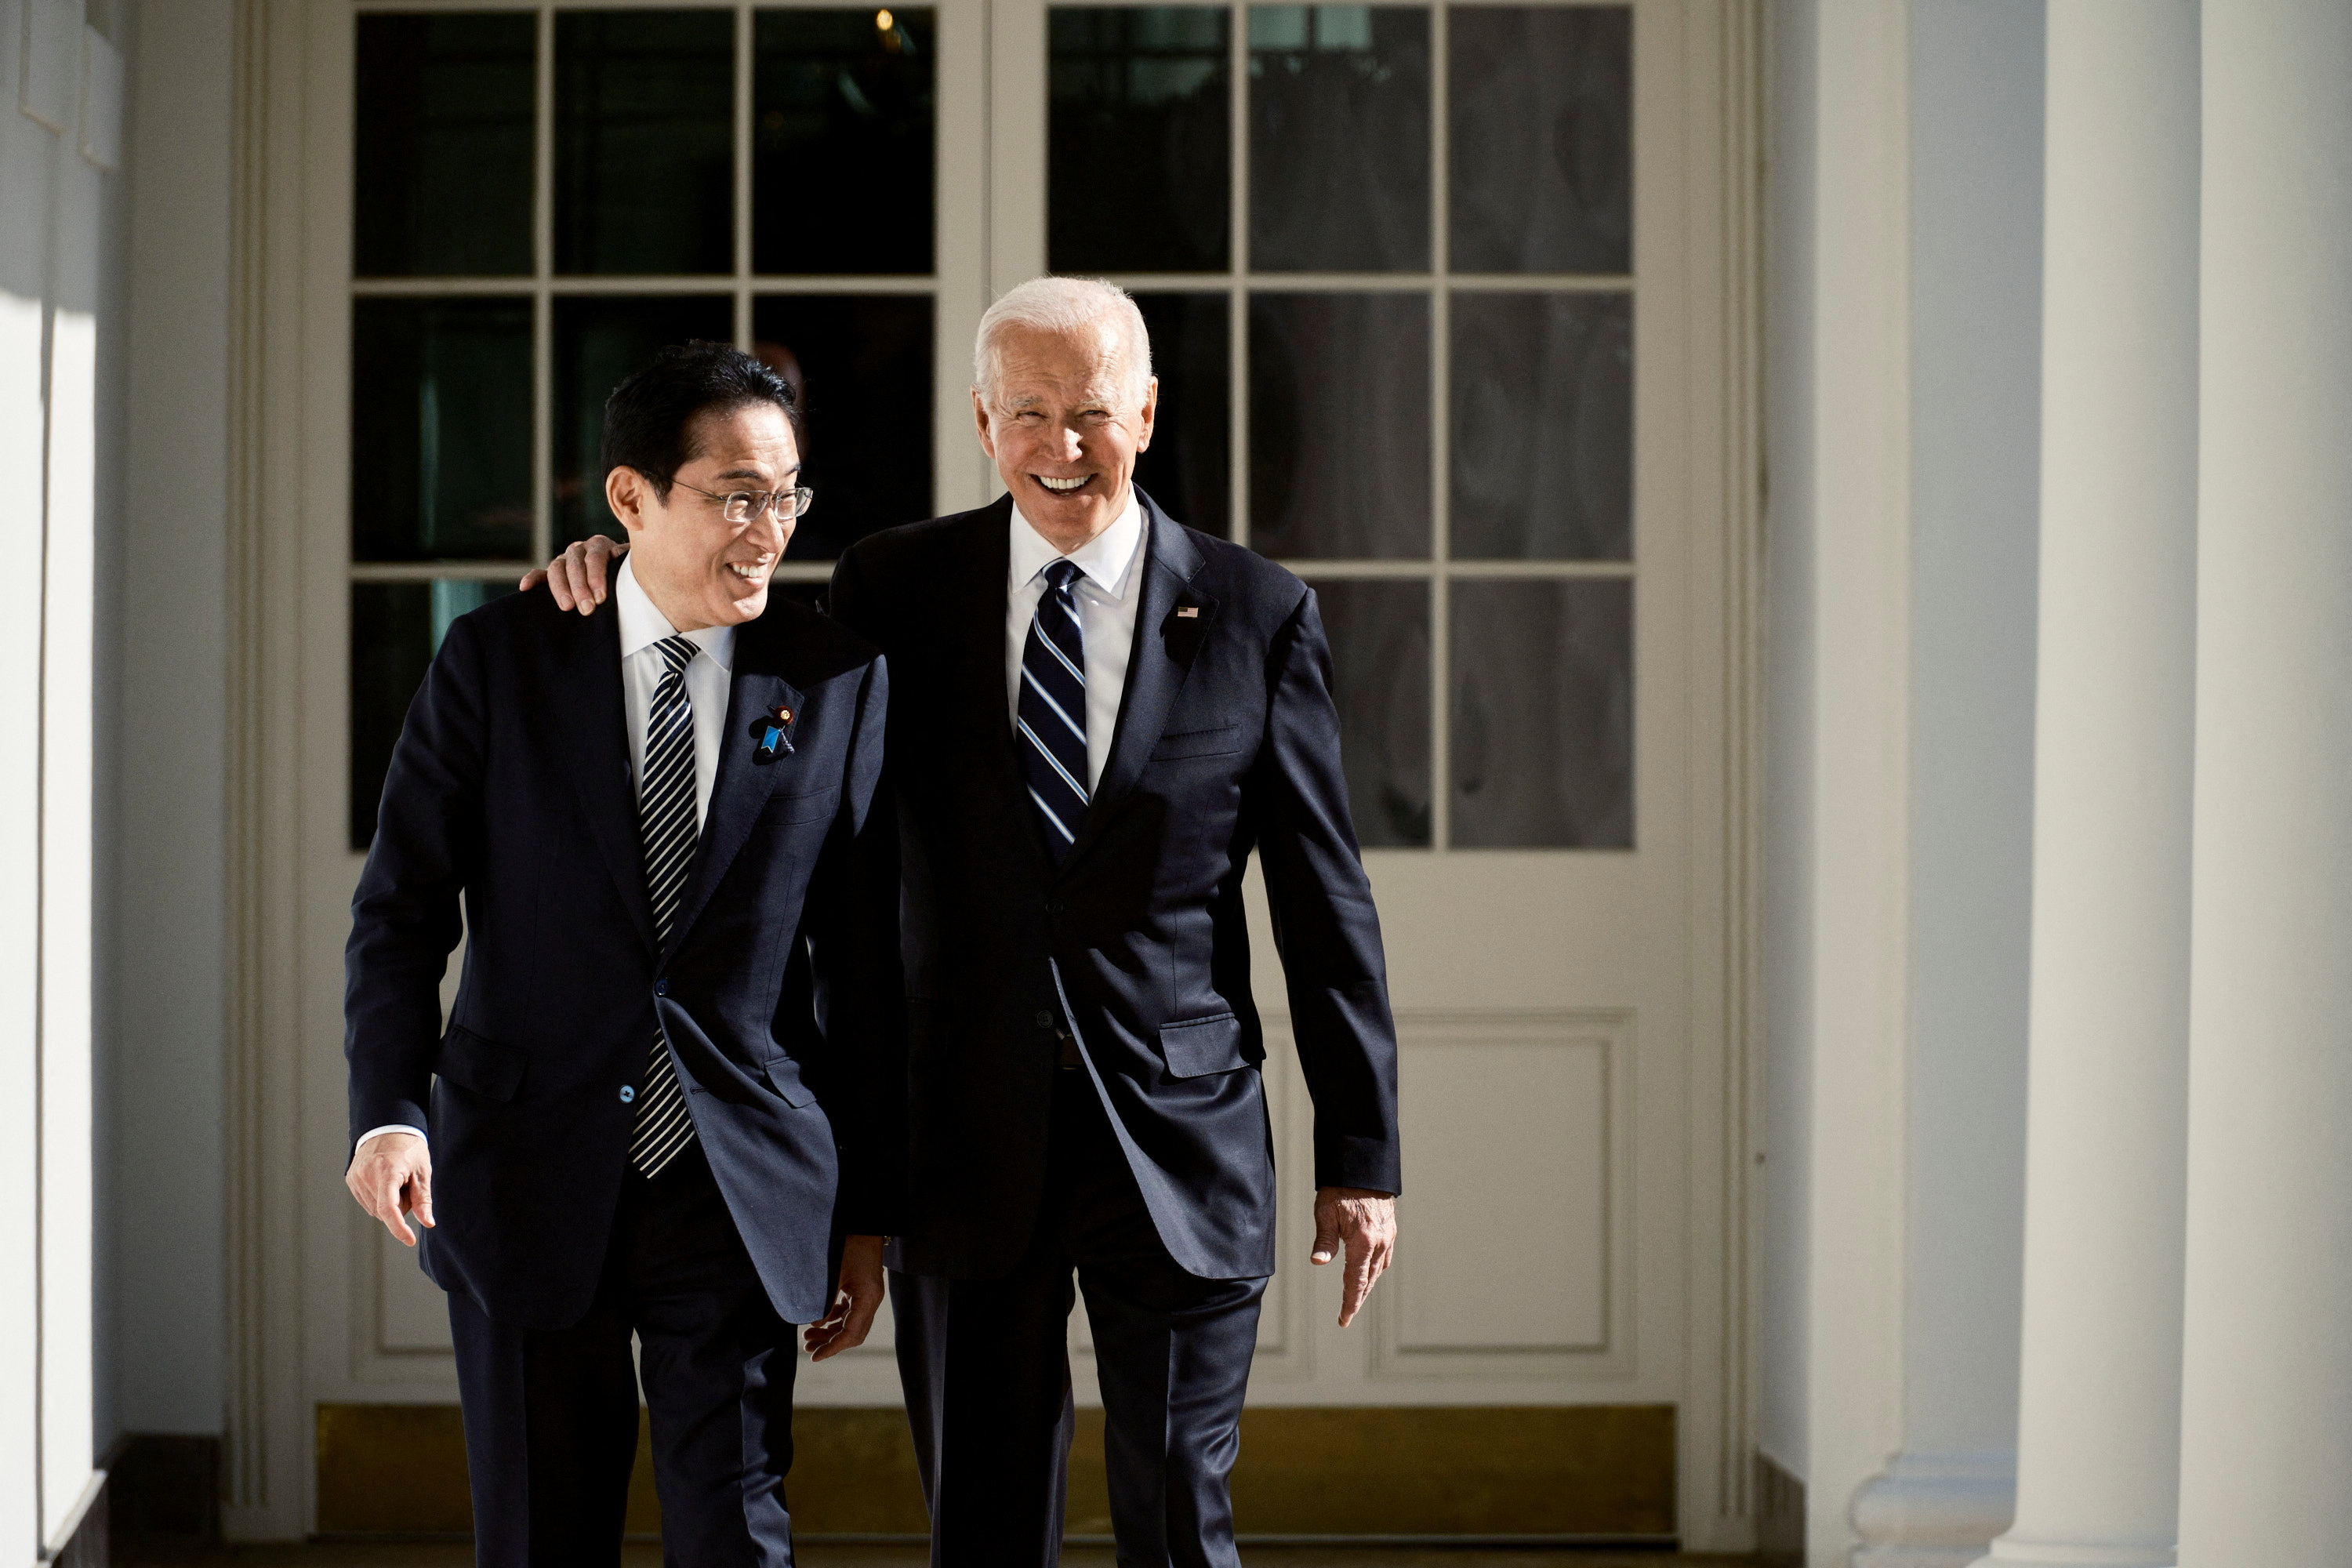 US President Biden welcomed Japanese Prime Minister Kishida to the White House in Washington